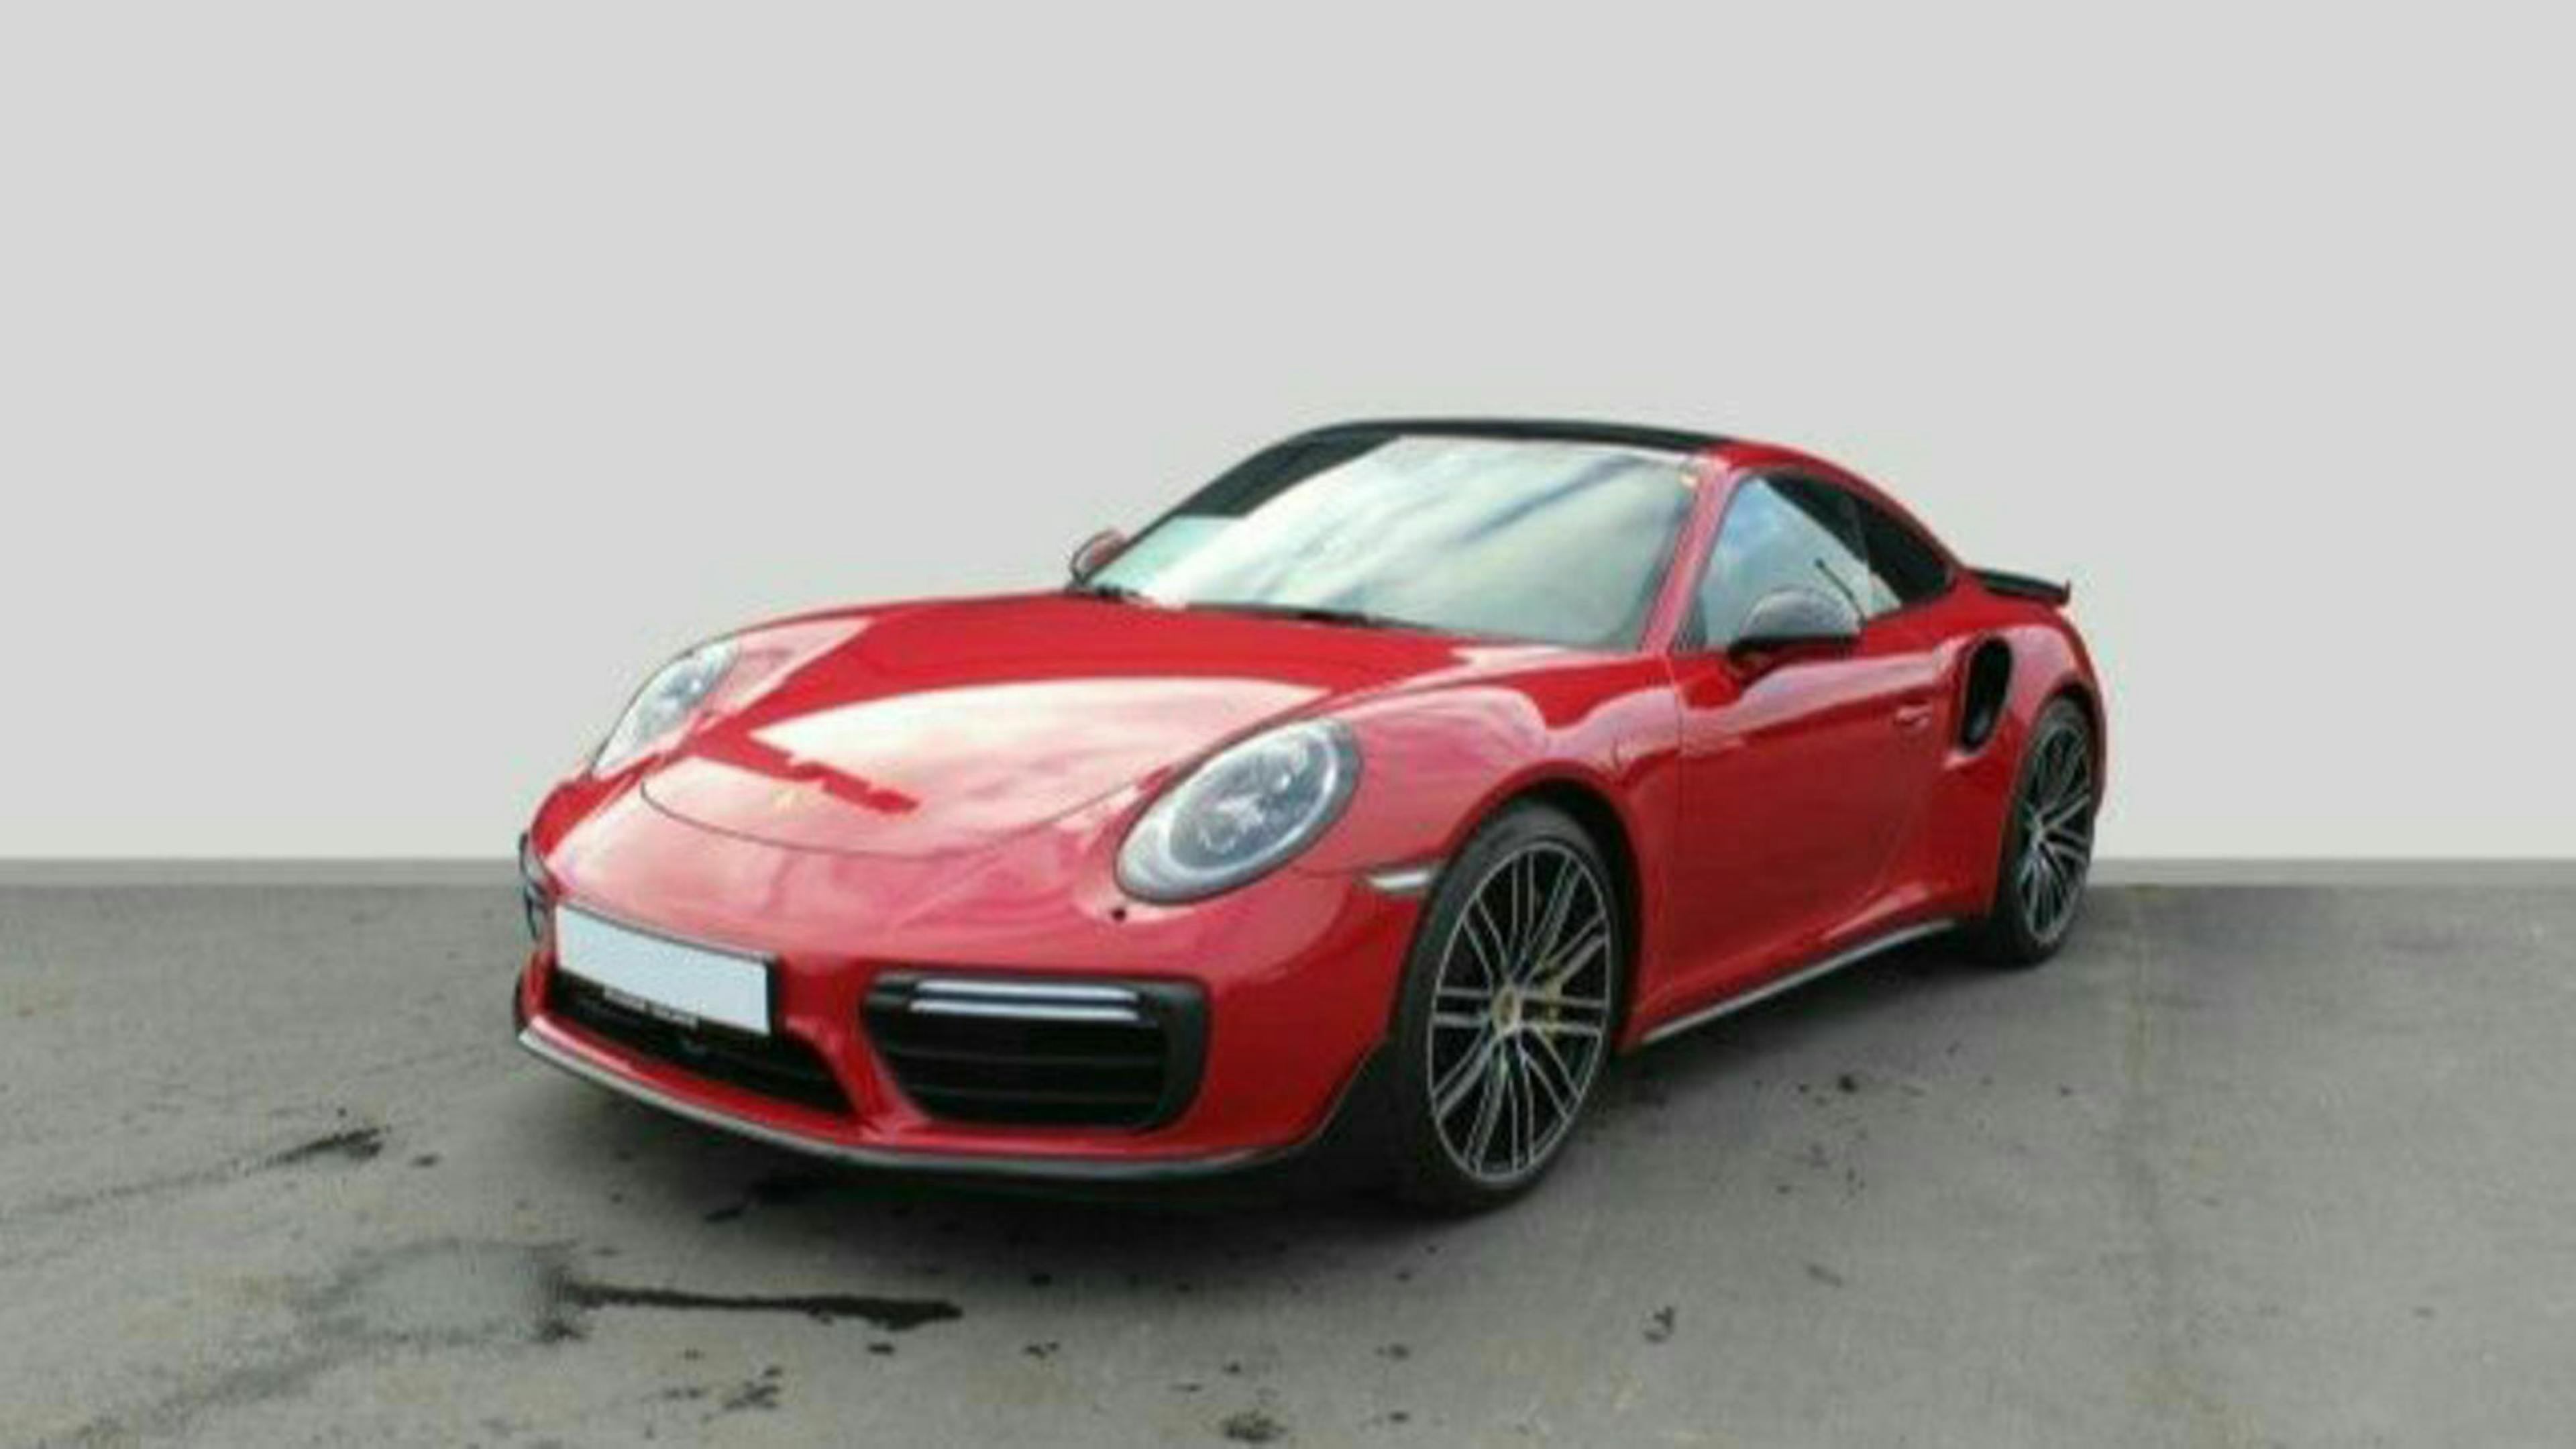 Ein roter Porsche 911 mit Heckantrieb steht vor einer weißen Wand